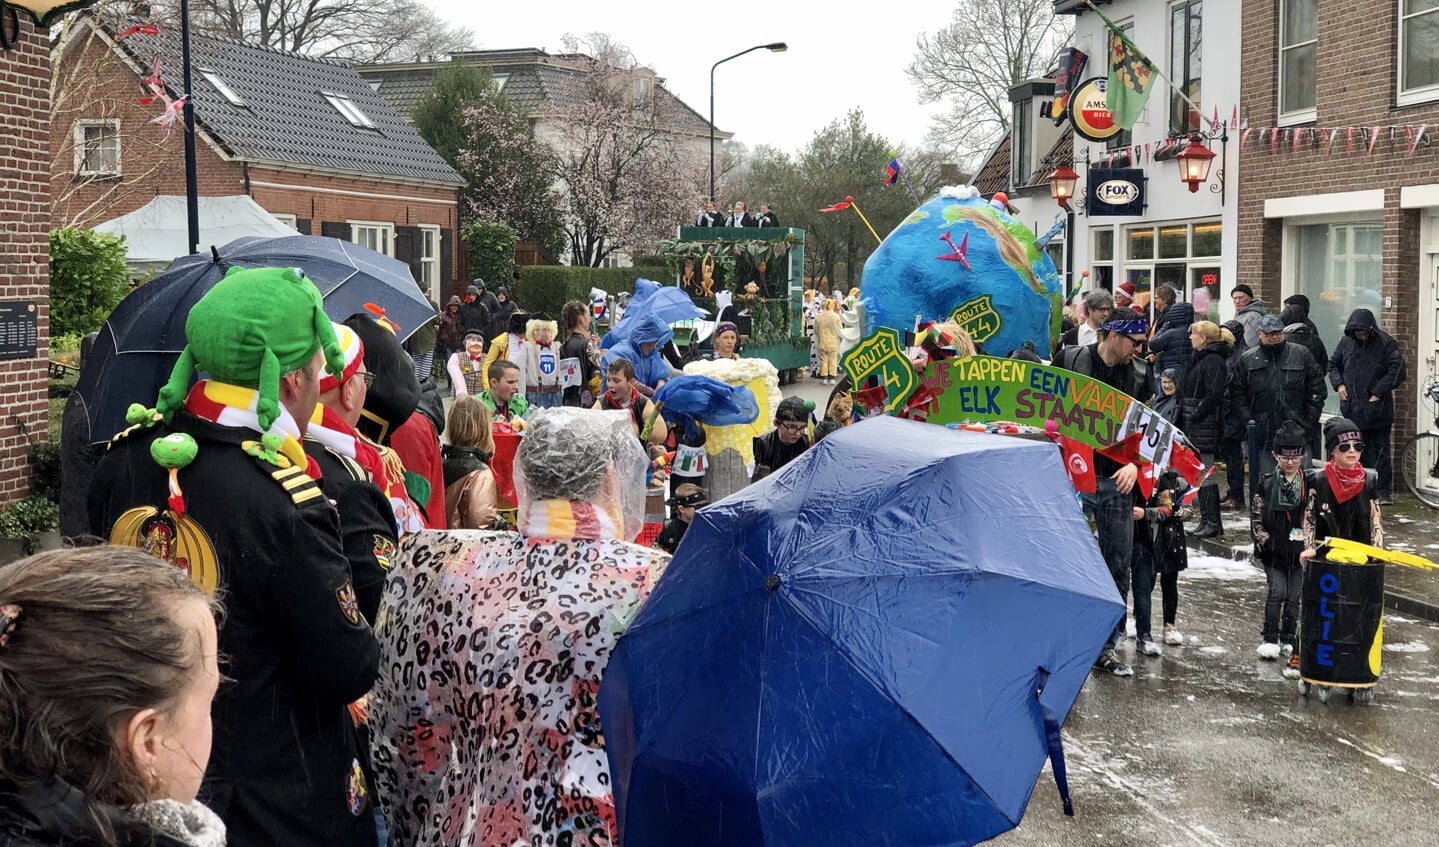 buis B.C. Aanzienlijk In beeld: Regenachtige editie carnavalsoptocht Hoogland - Nieuws uit de  regio Amersfoort